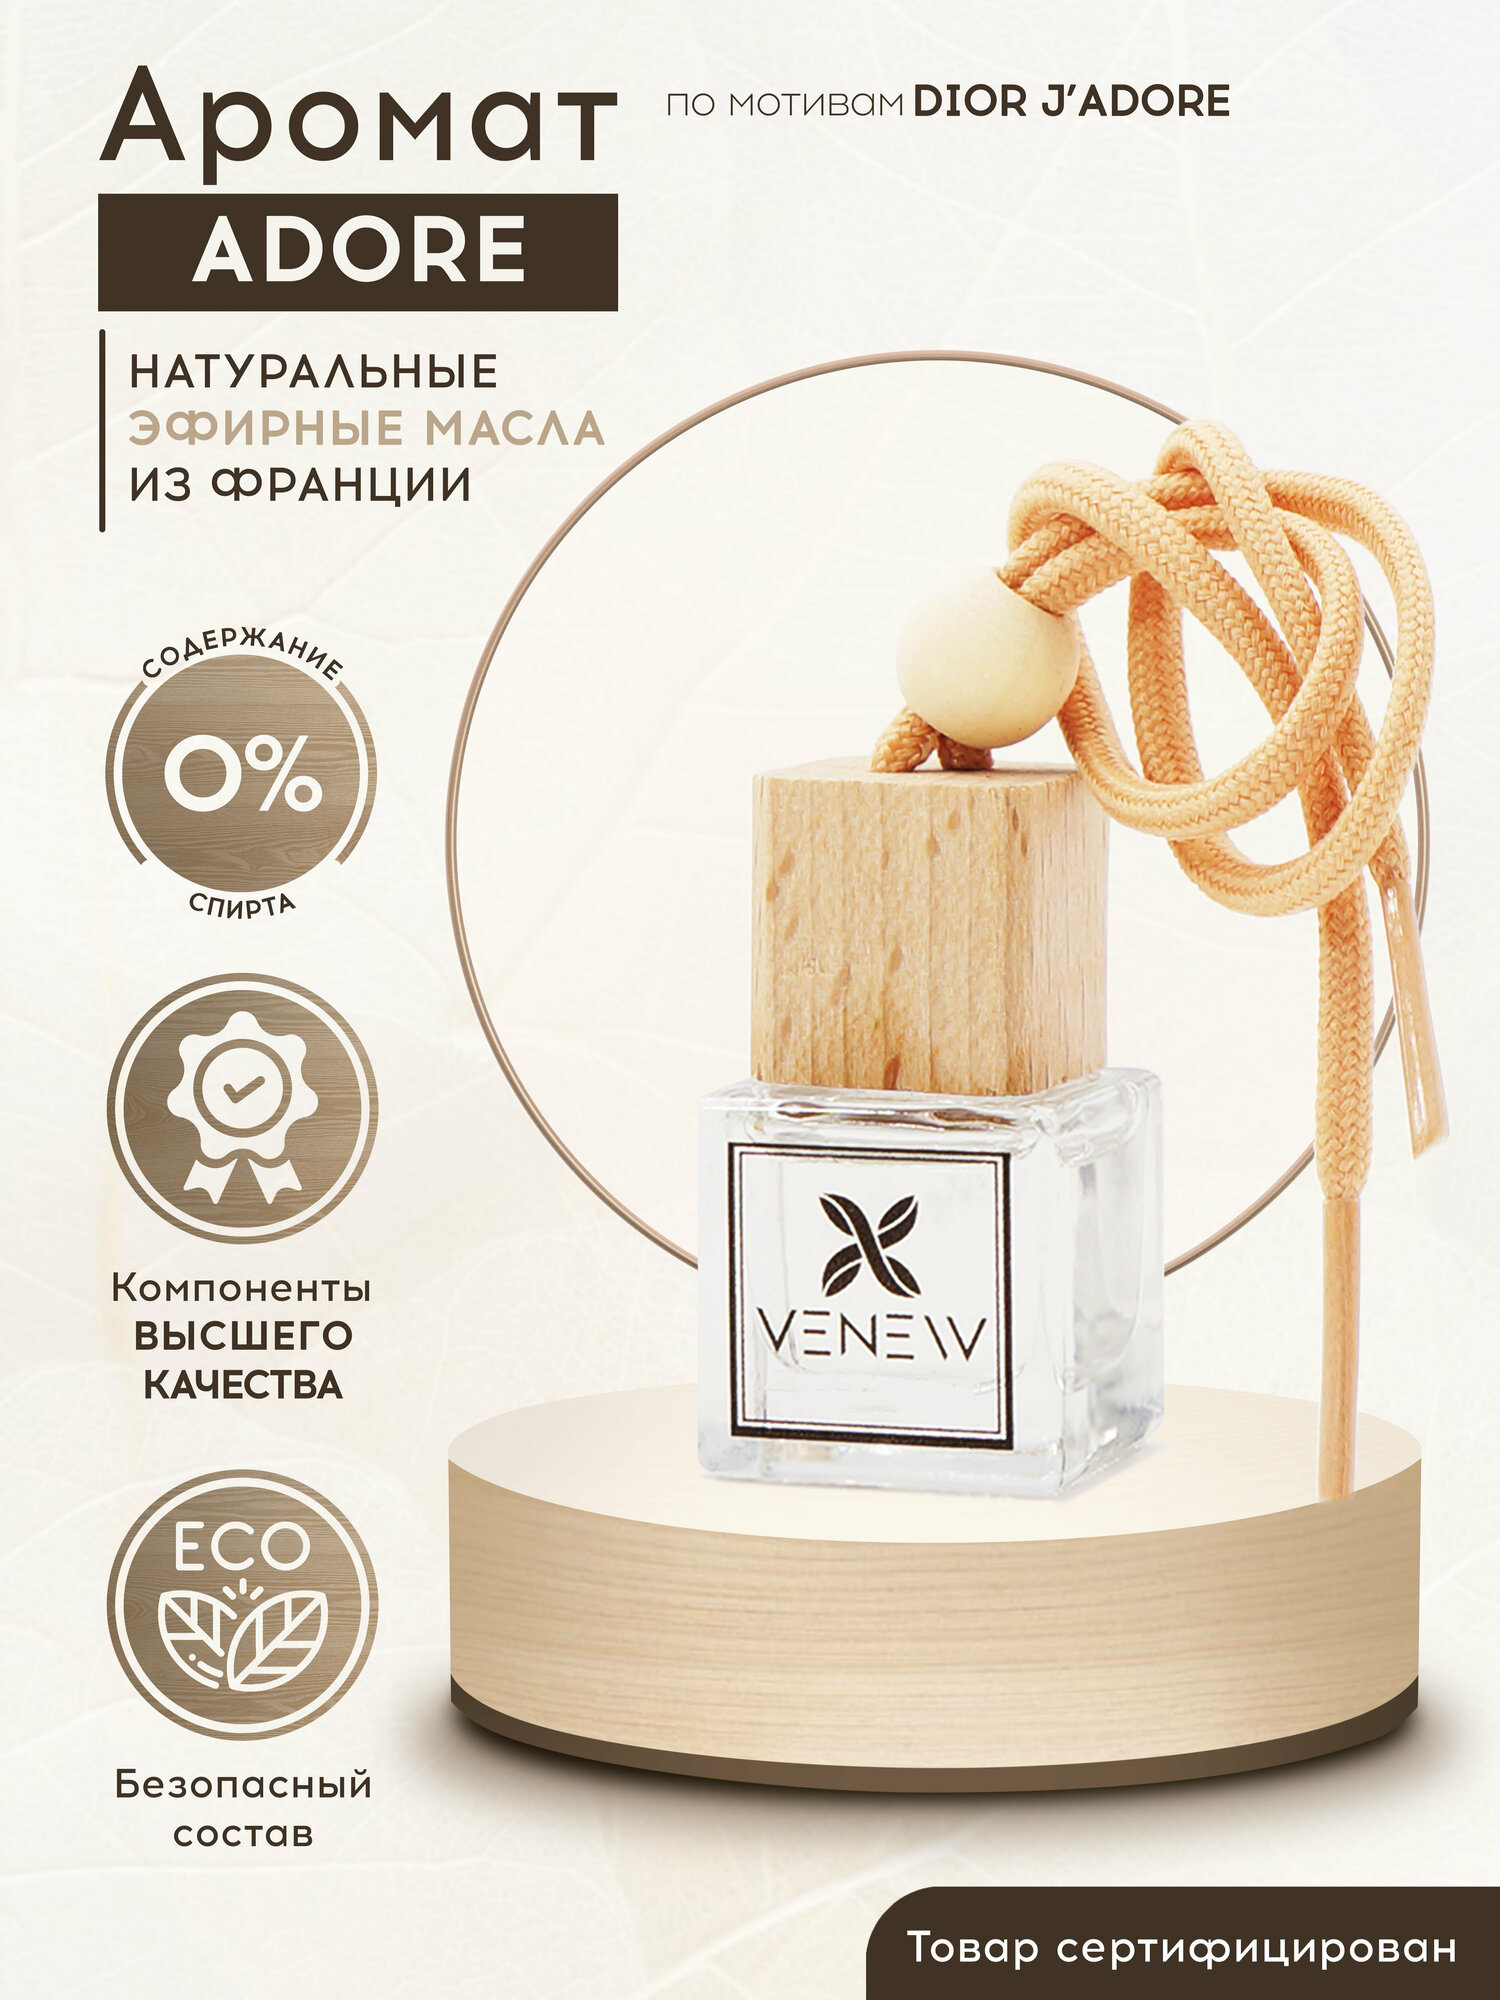 VENEW Ароматизатор для автомобиля / Автомобильный парфюм, аромат по мотивам Dior J'Adore